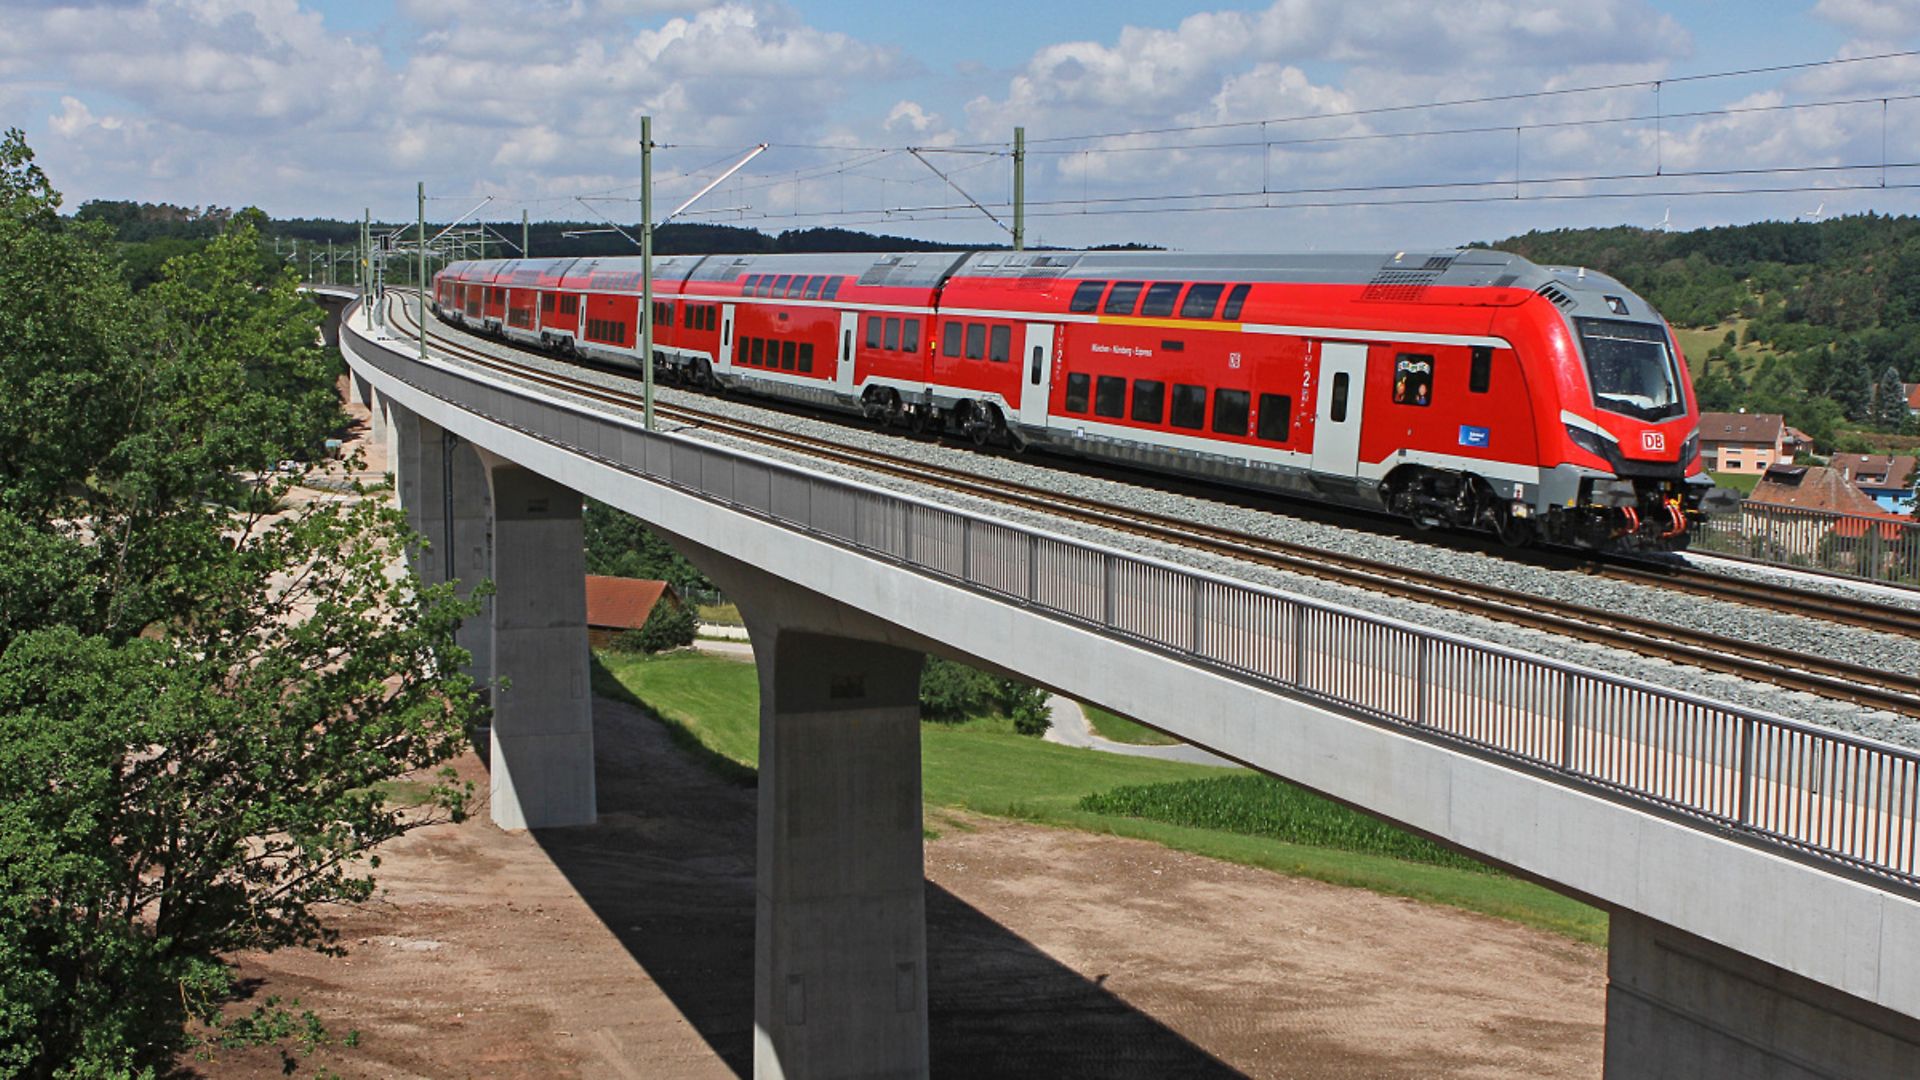 Neues Gesicht auf dem Netz der DB - DB Regio Baureihe 102 mit Dosto (Skoda) für Nürnberg-Ingolstadt-München